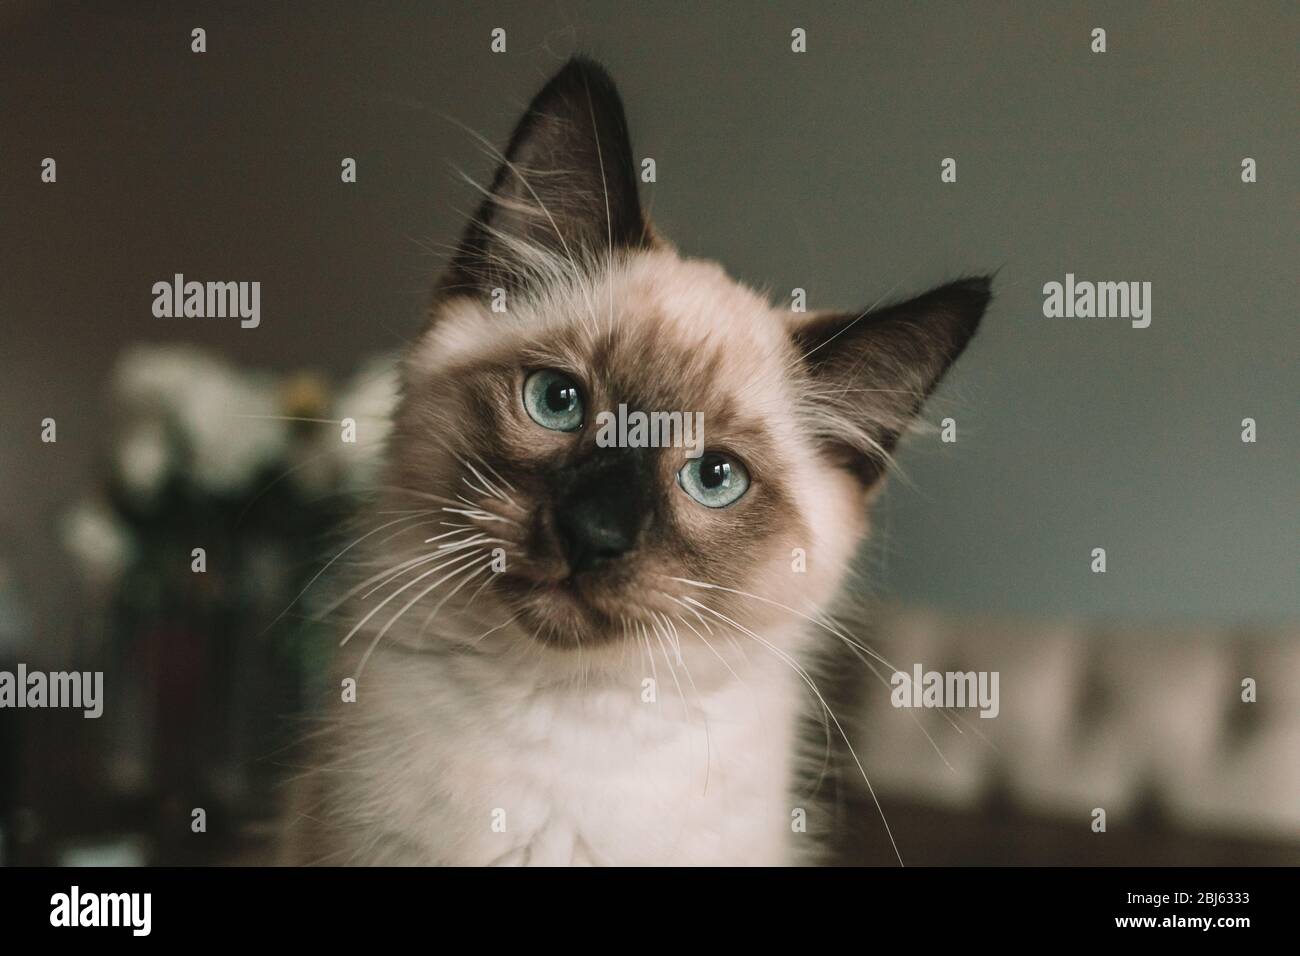 Blue eyed Siamese kitten sitting on table Stock Photo